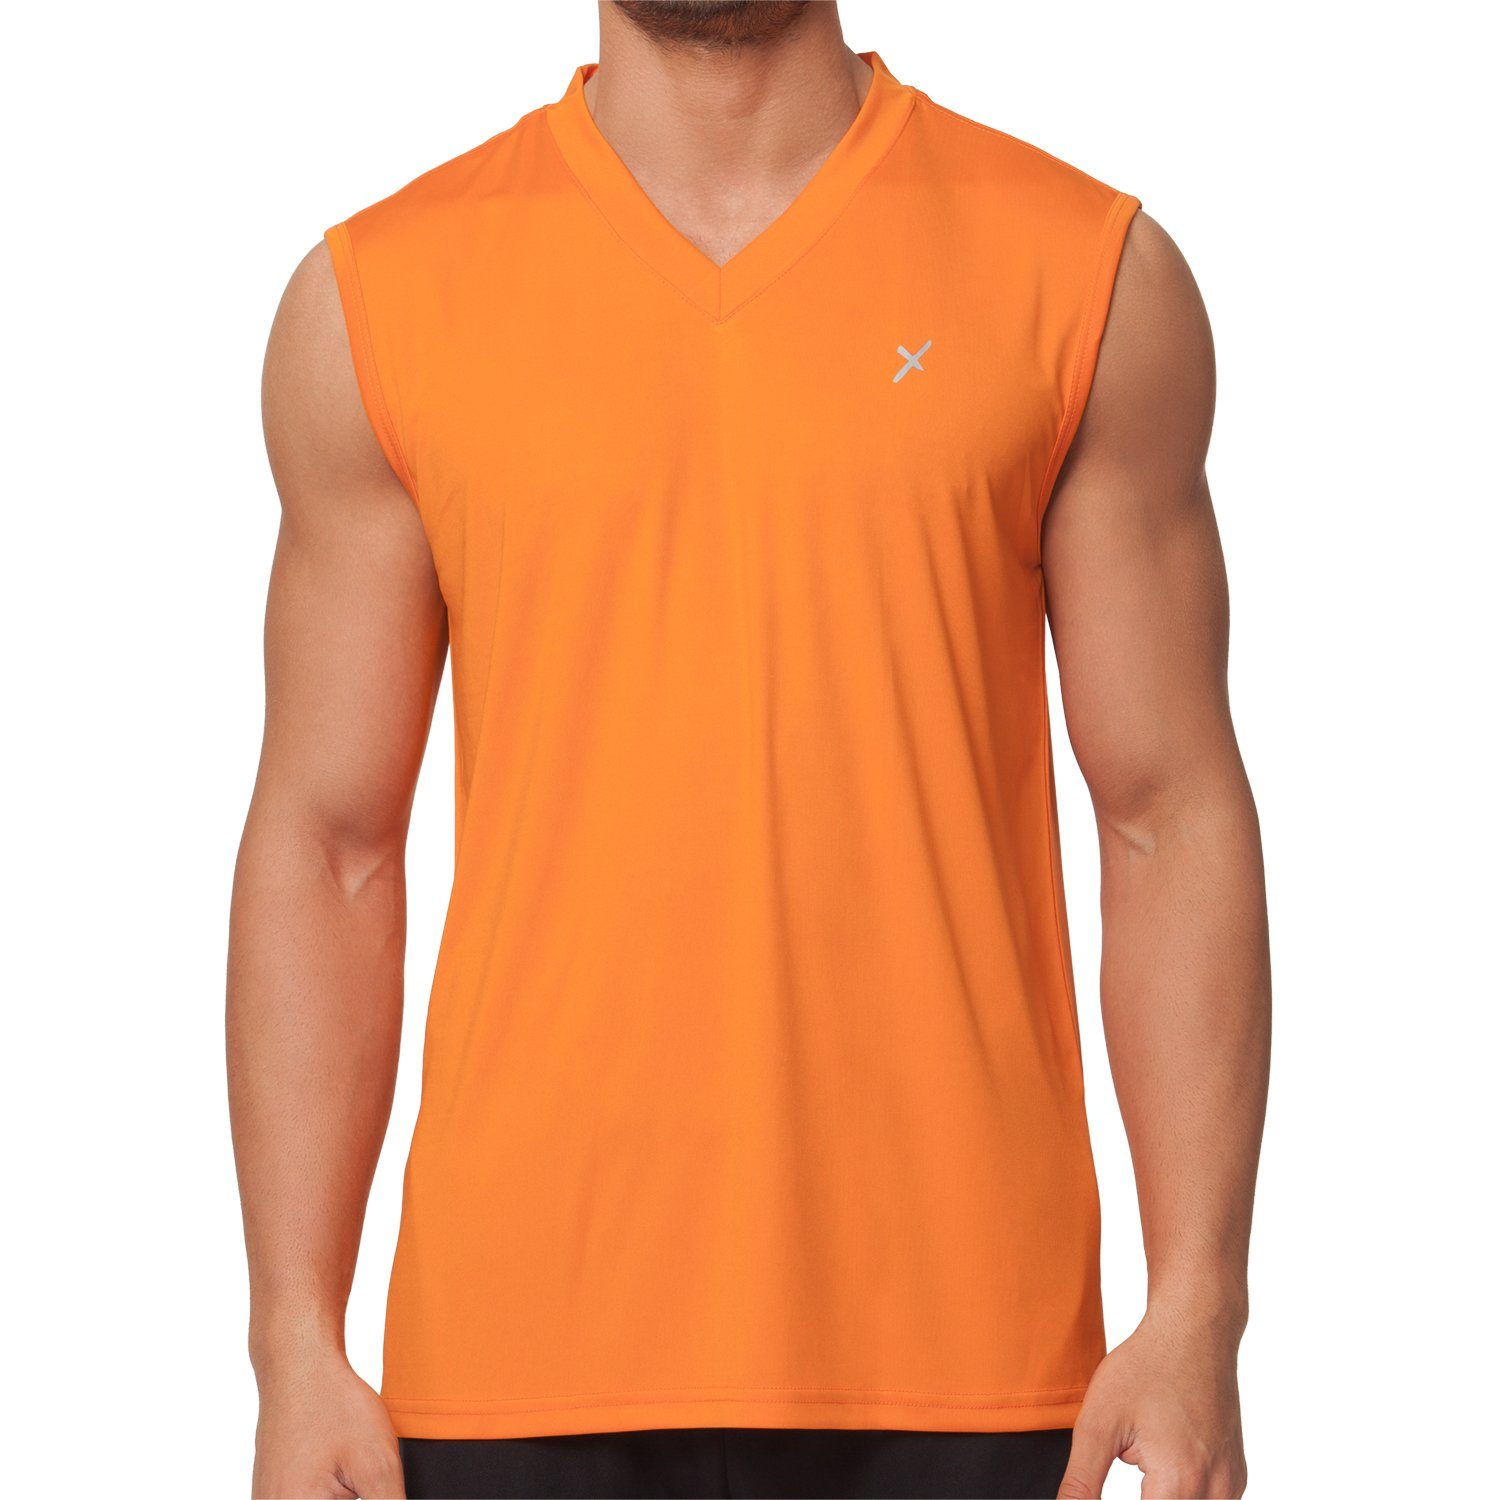 CFLEX Trainingsshirt Herren Sport Shirt Fitness Muscle-Shirt Sportswear Collection Orange